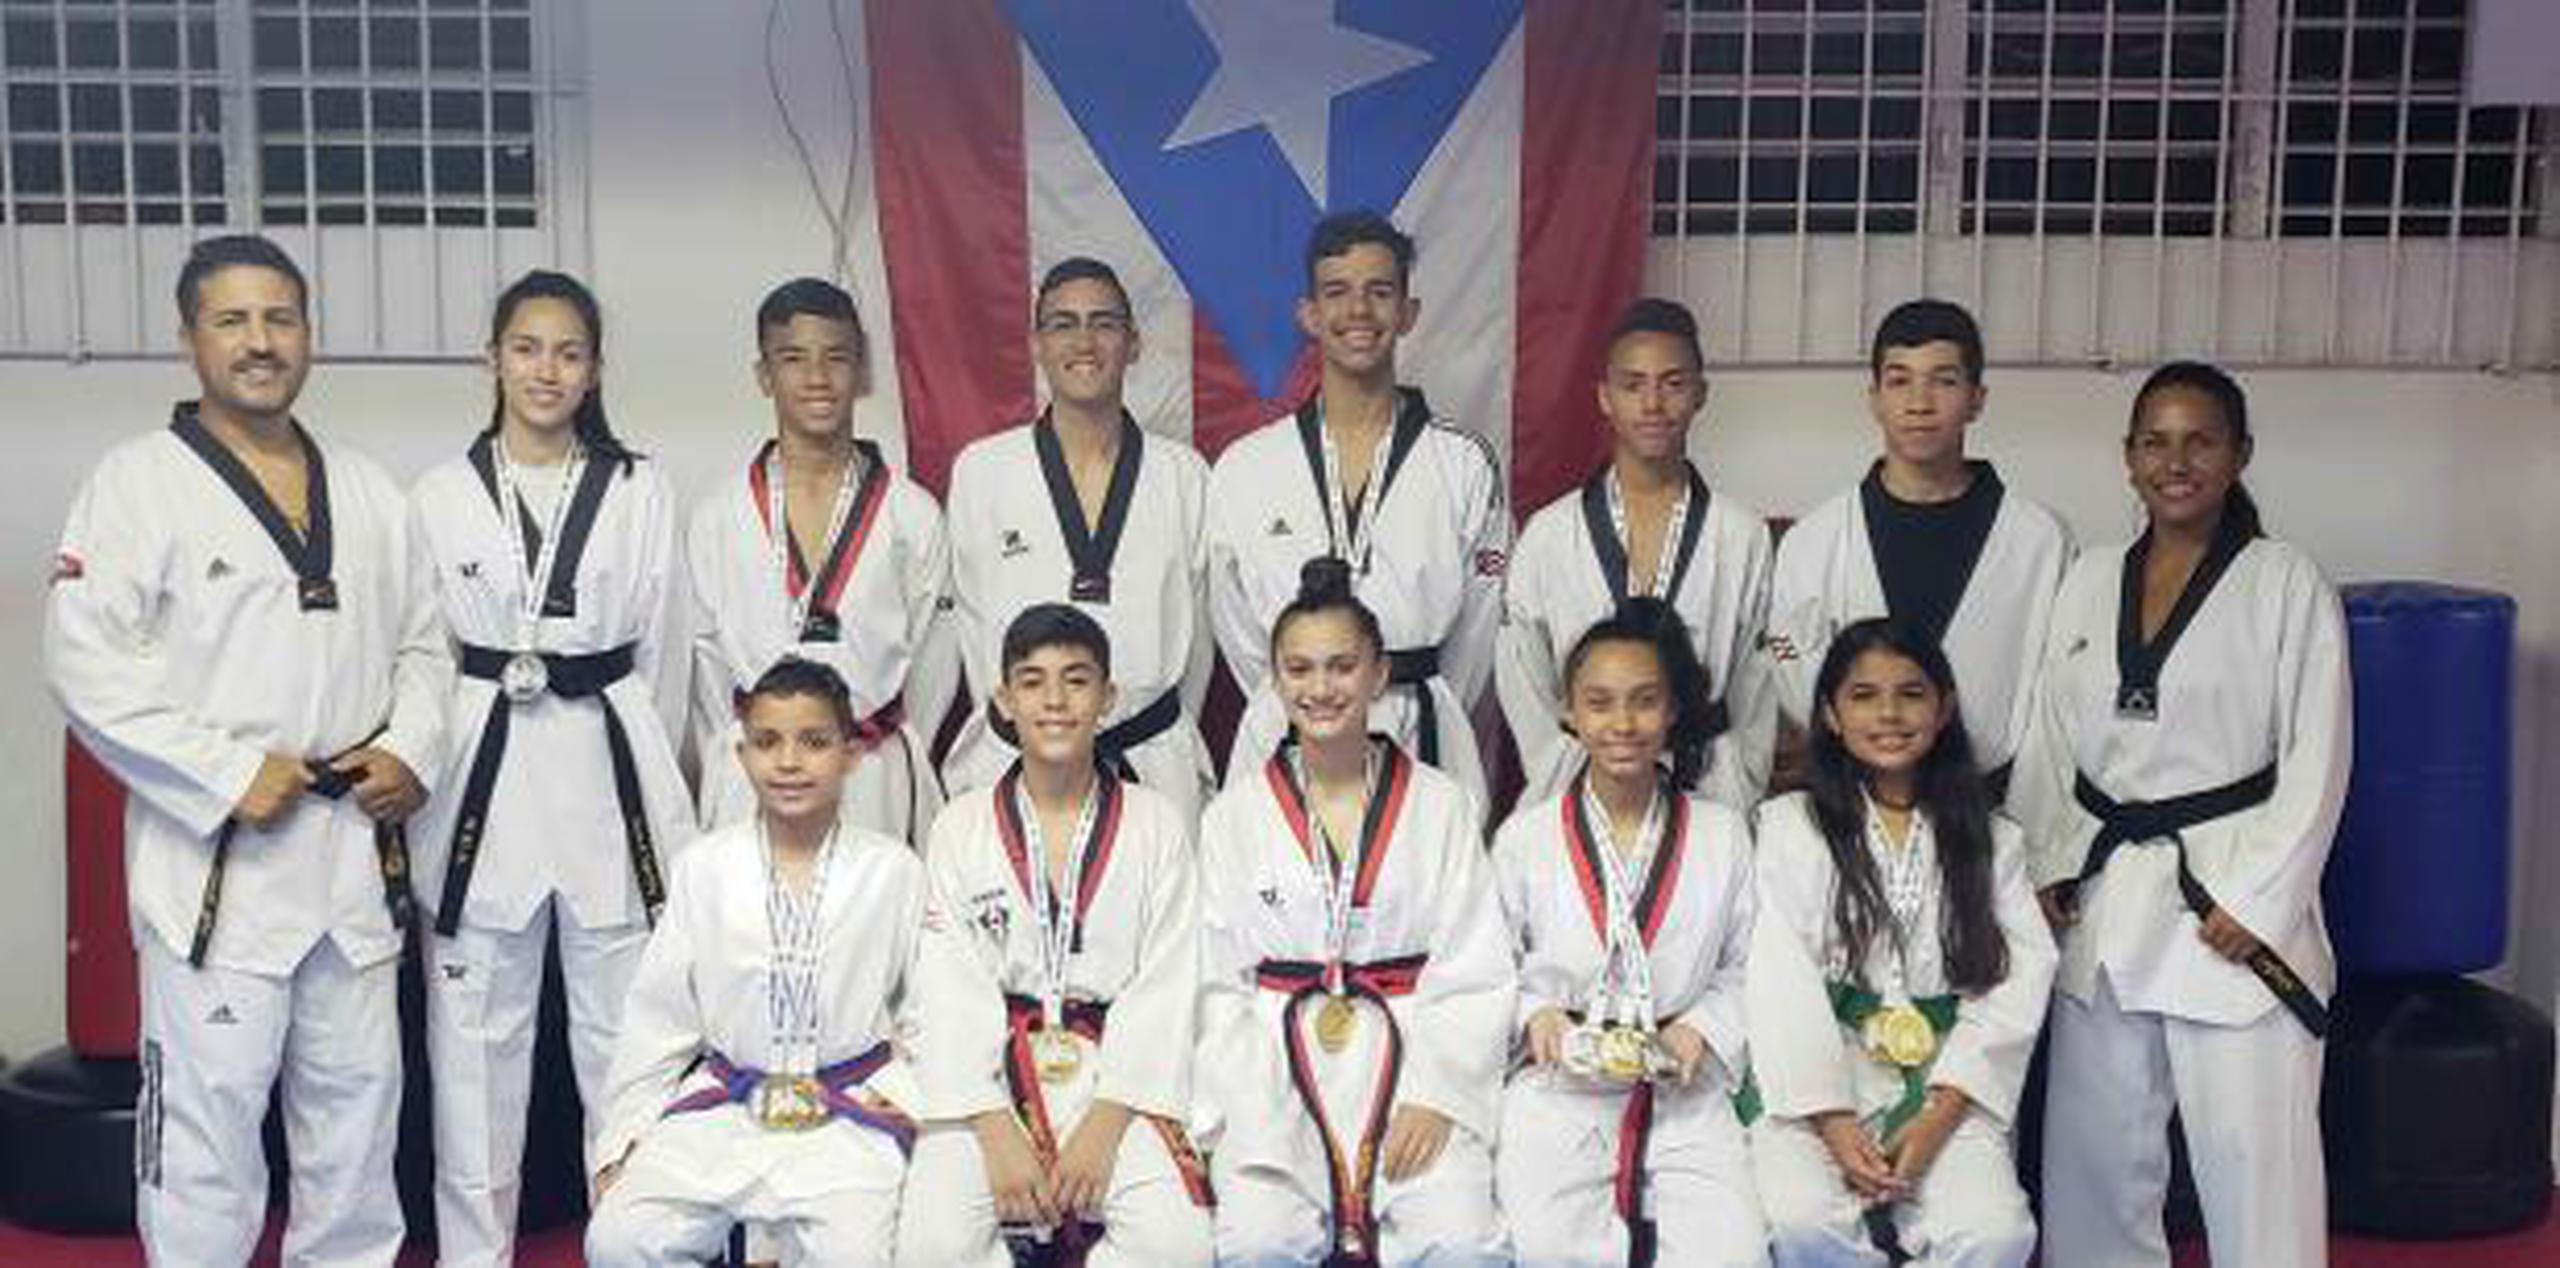 Academia Guayama Taekwondo, dirigida por el master Luis Peña y Legna Delgado. (Suministrada)